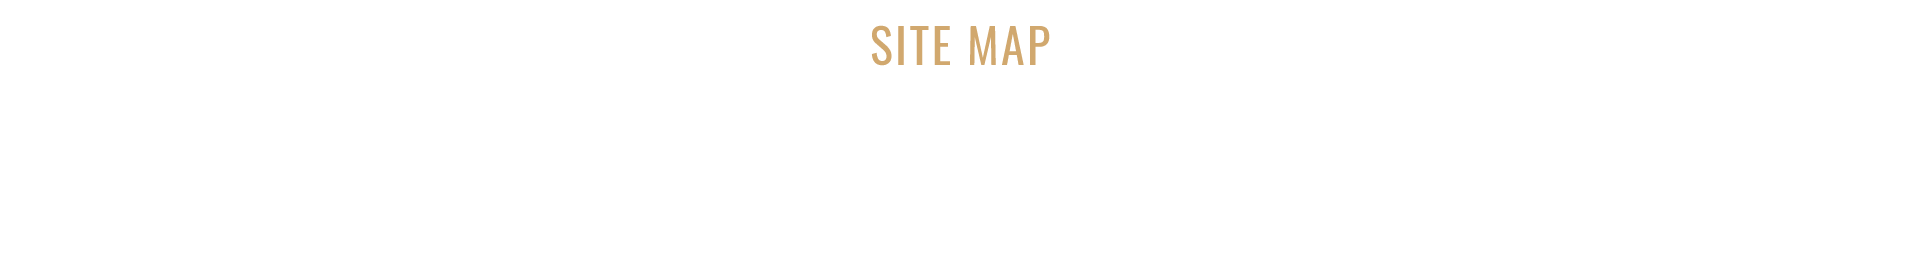 sitemap